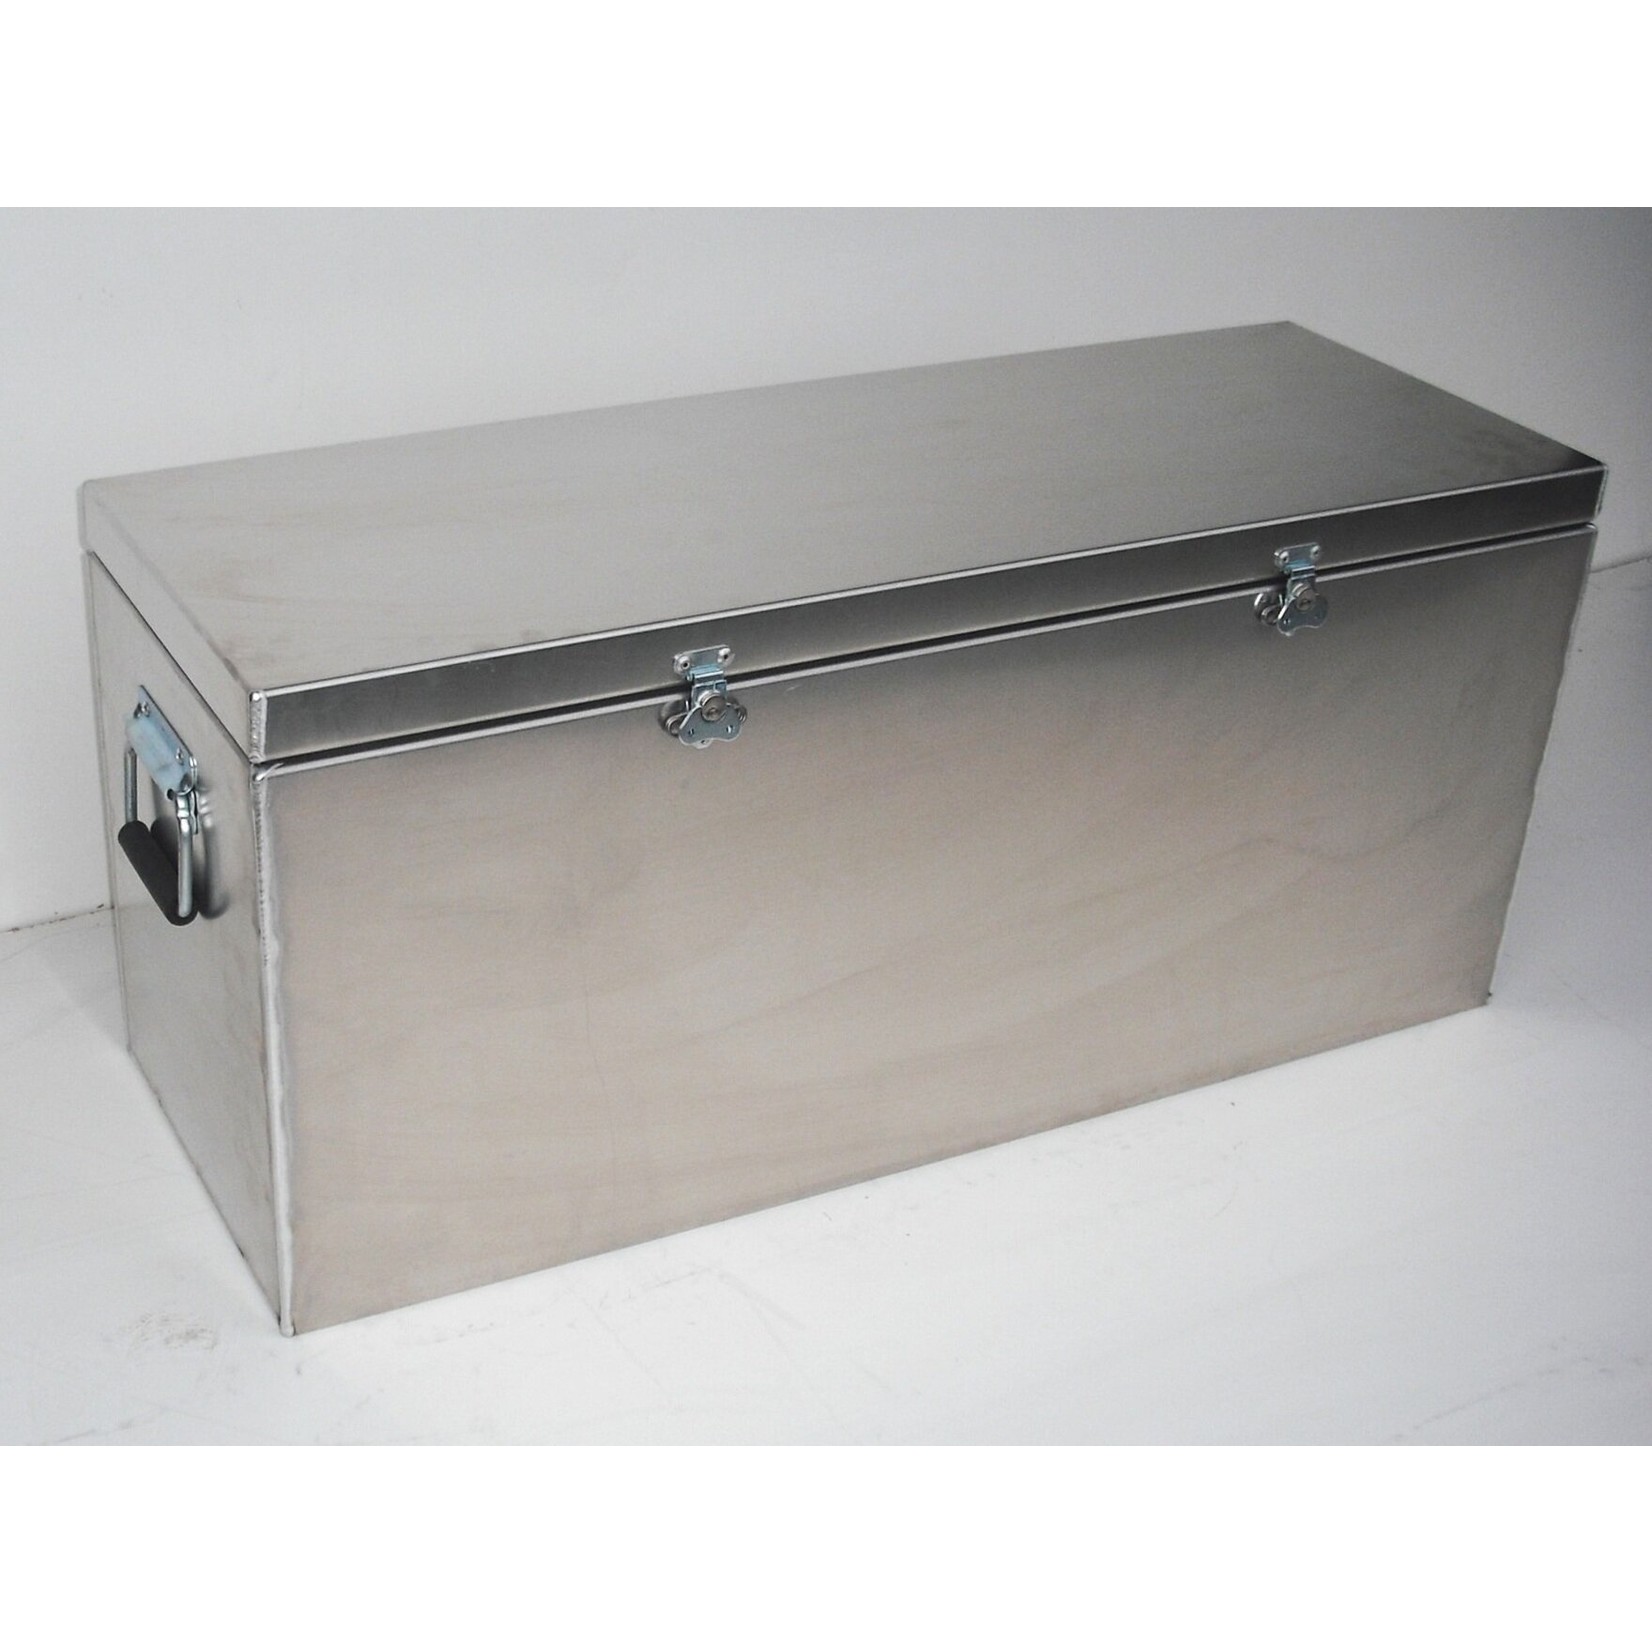 RecRetec Original Dry Box with Spring/Folding Handles